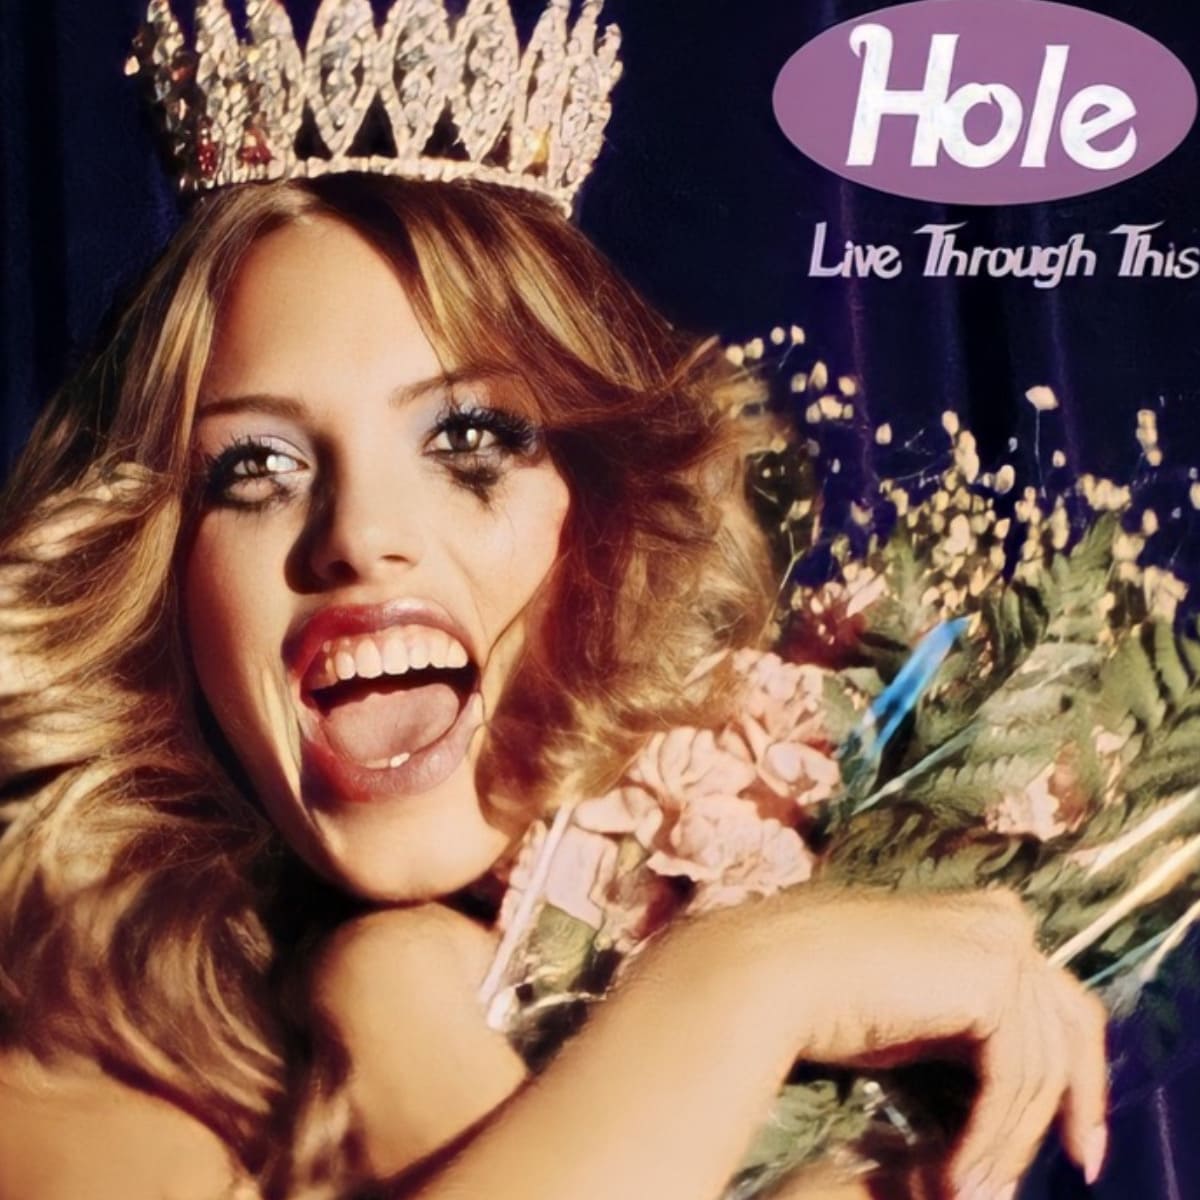 Albumcover von "Live Through This" von der Band Hole